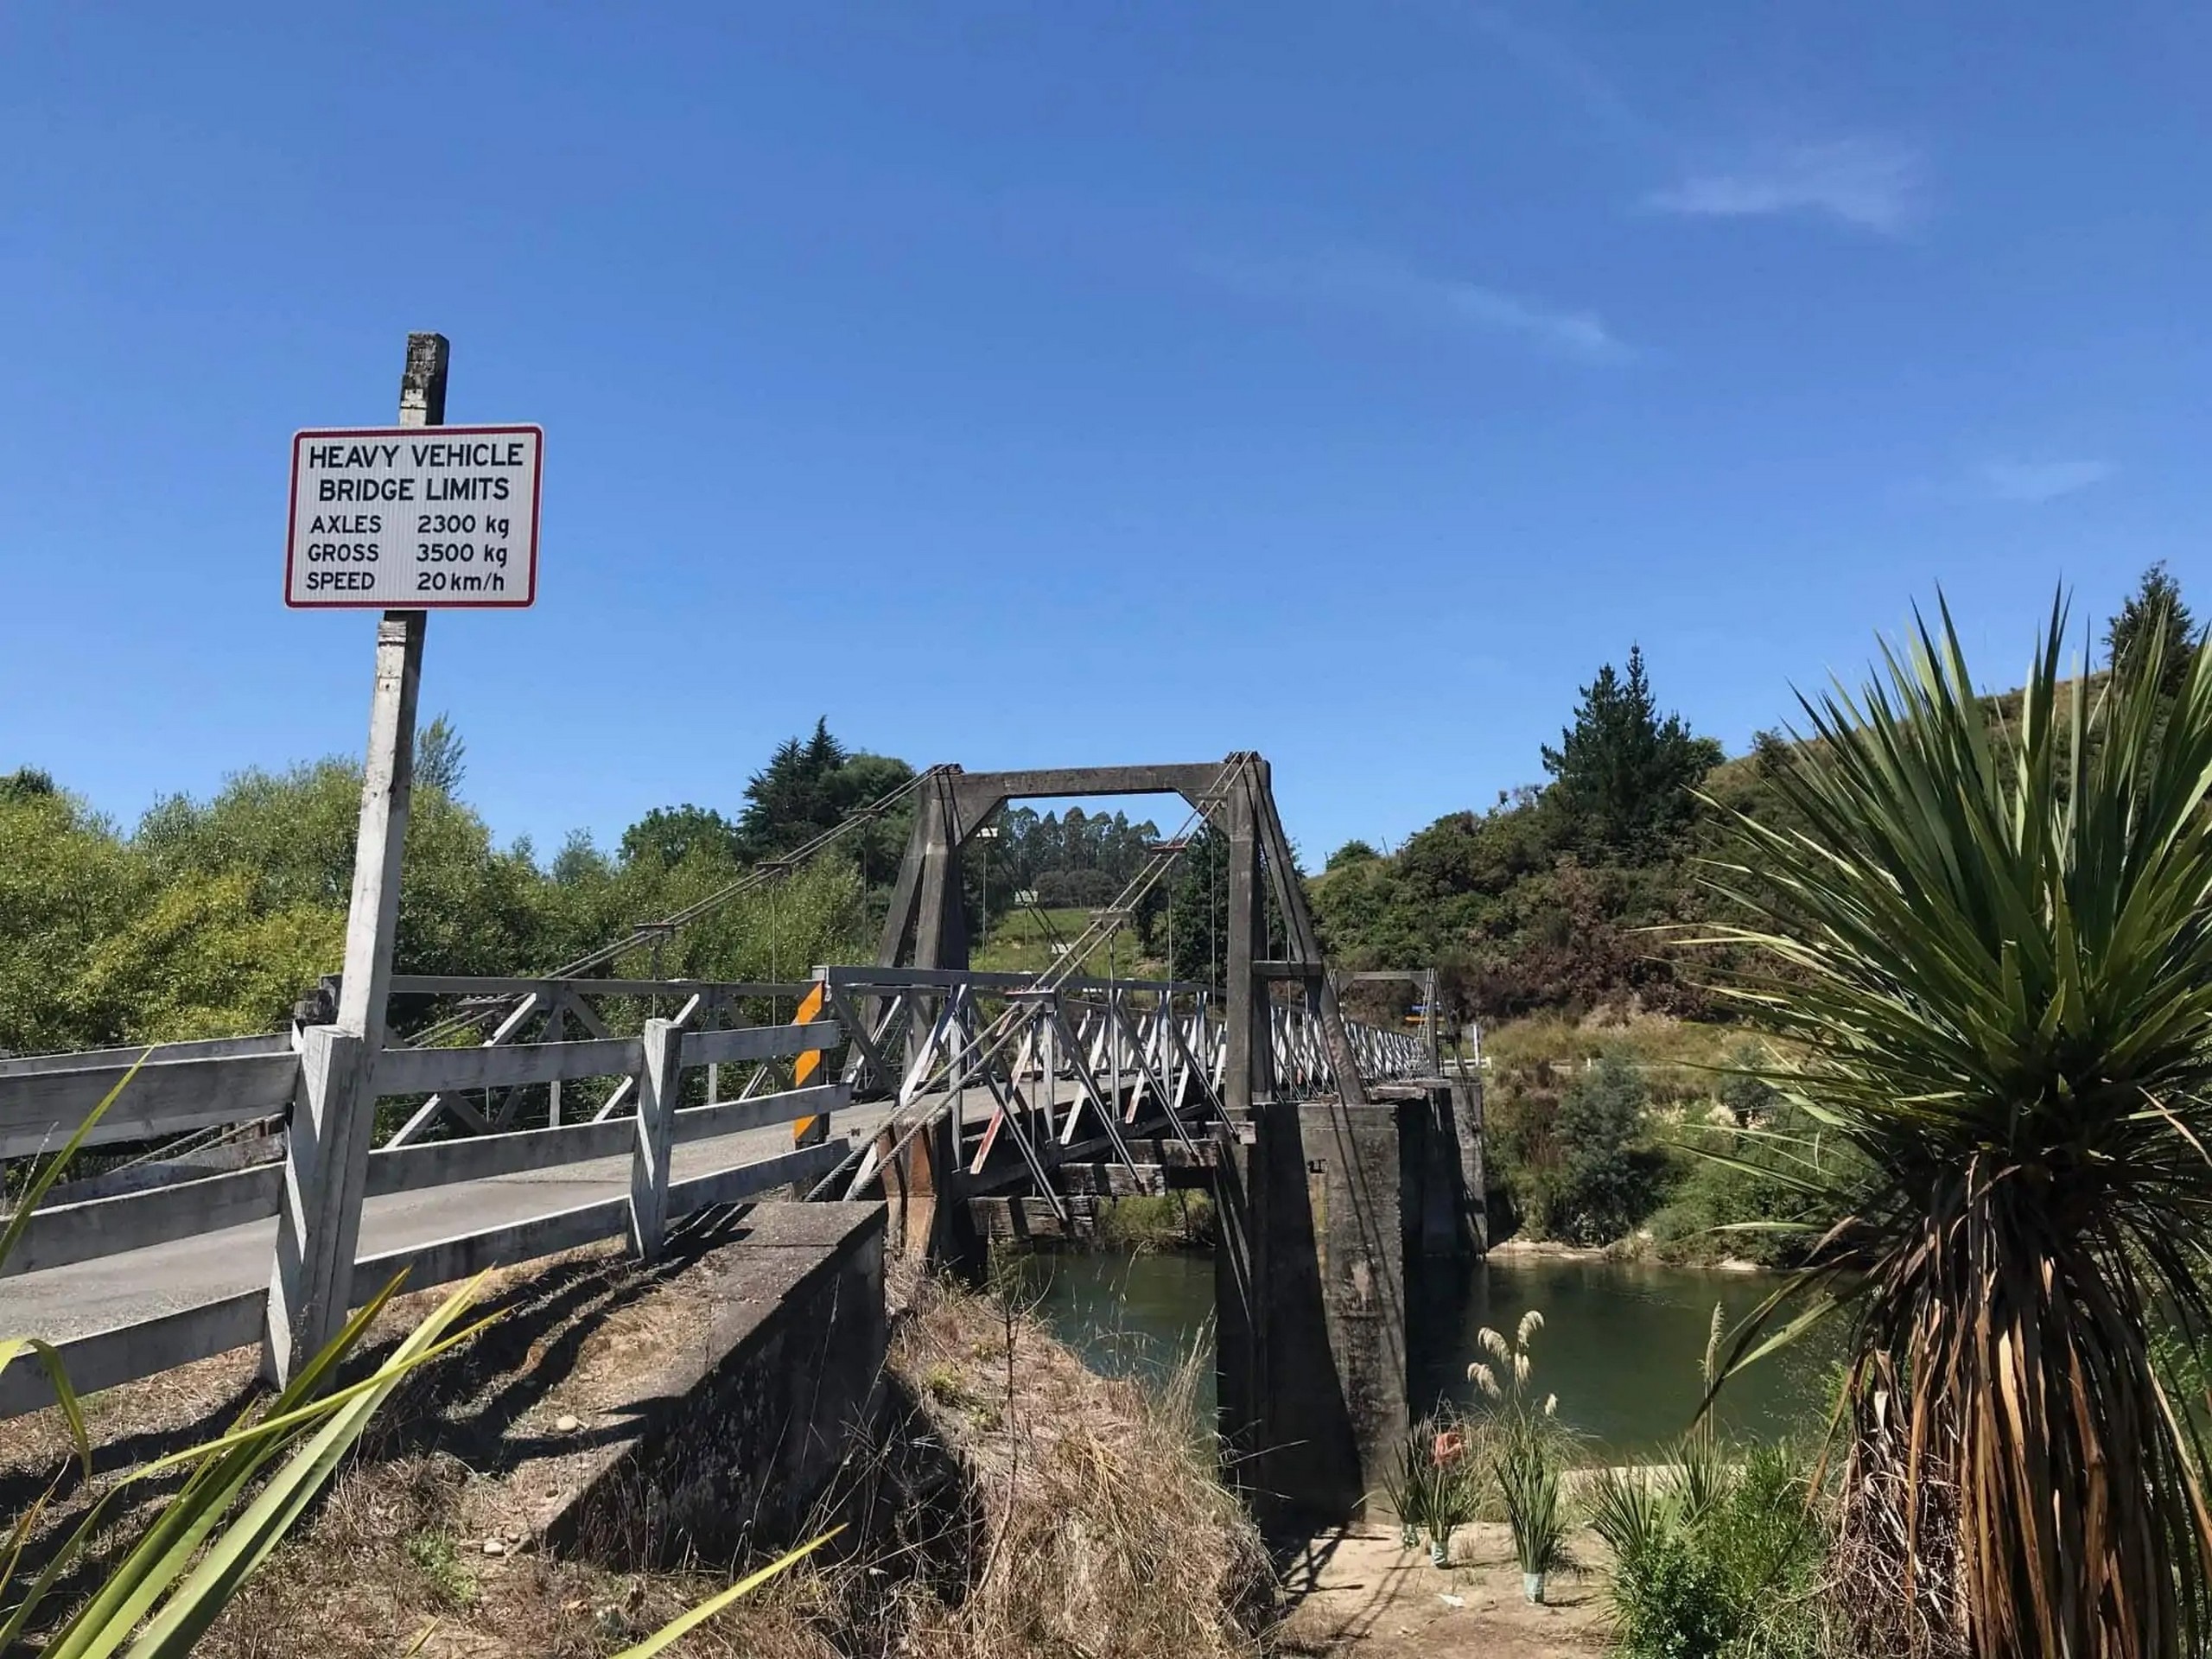 Crossing the bridge in New Zealand